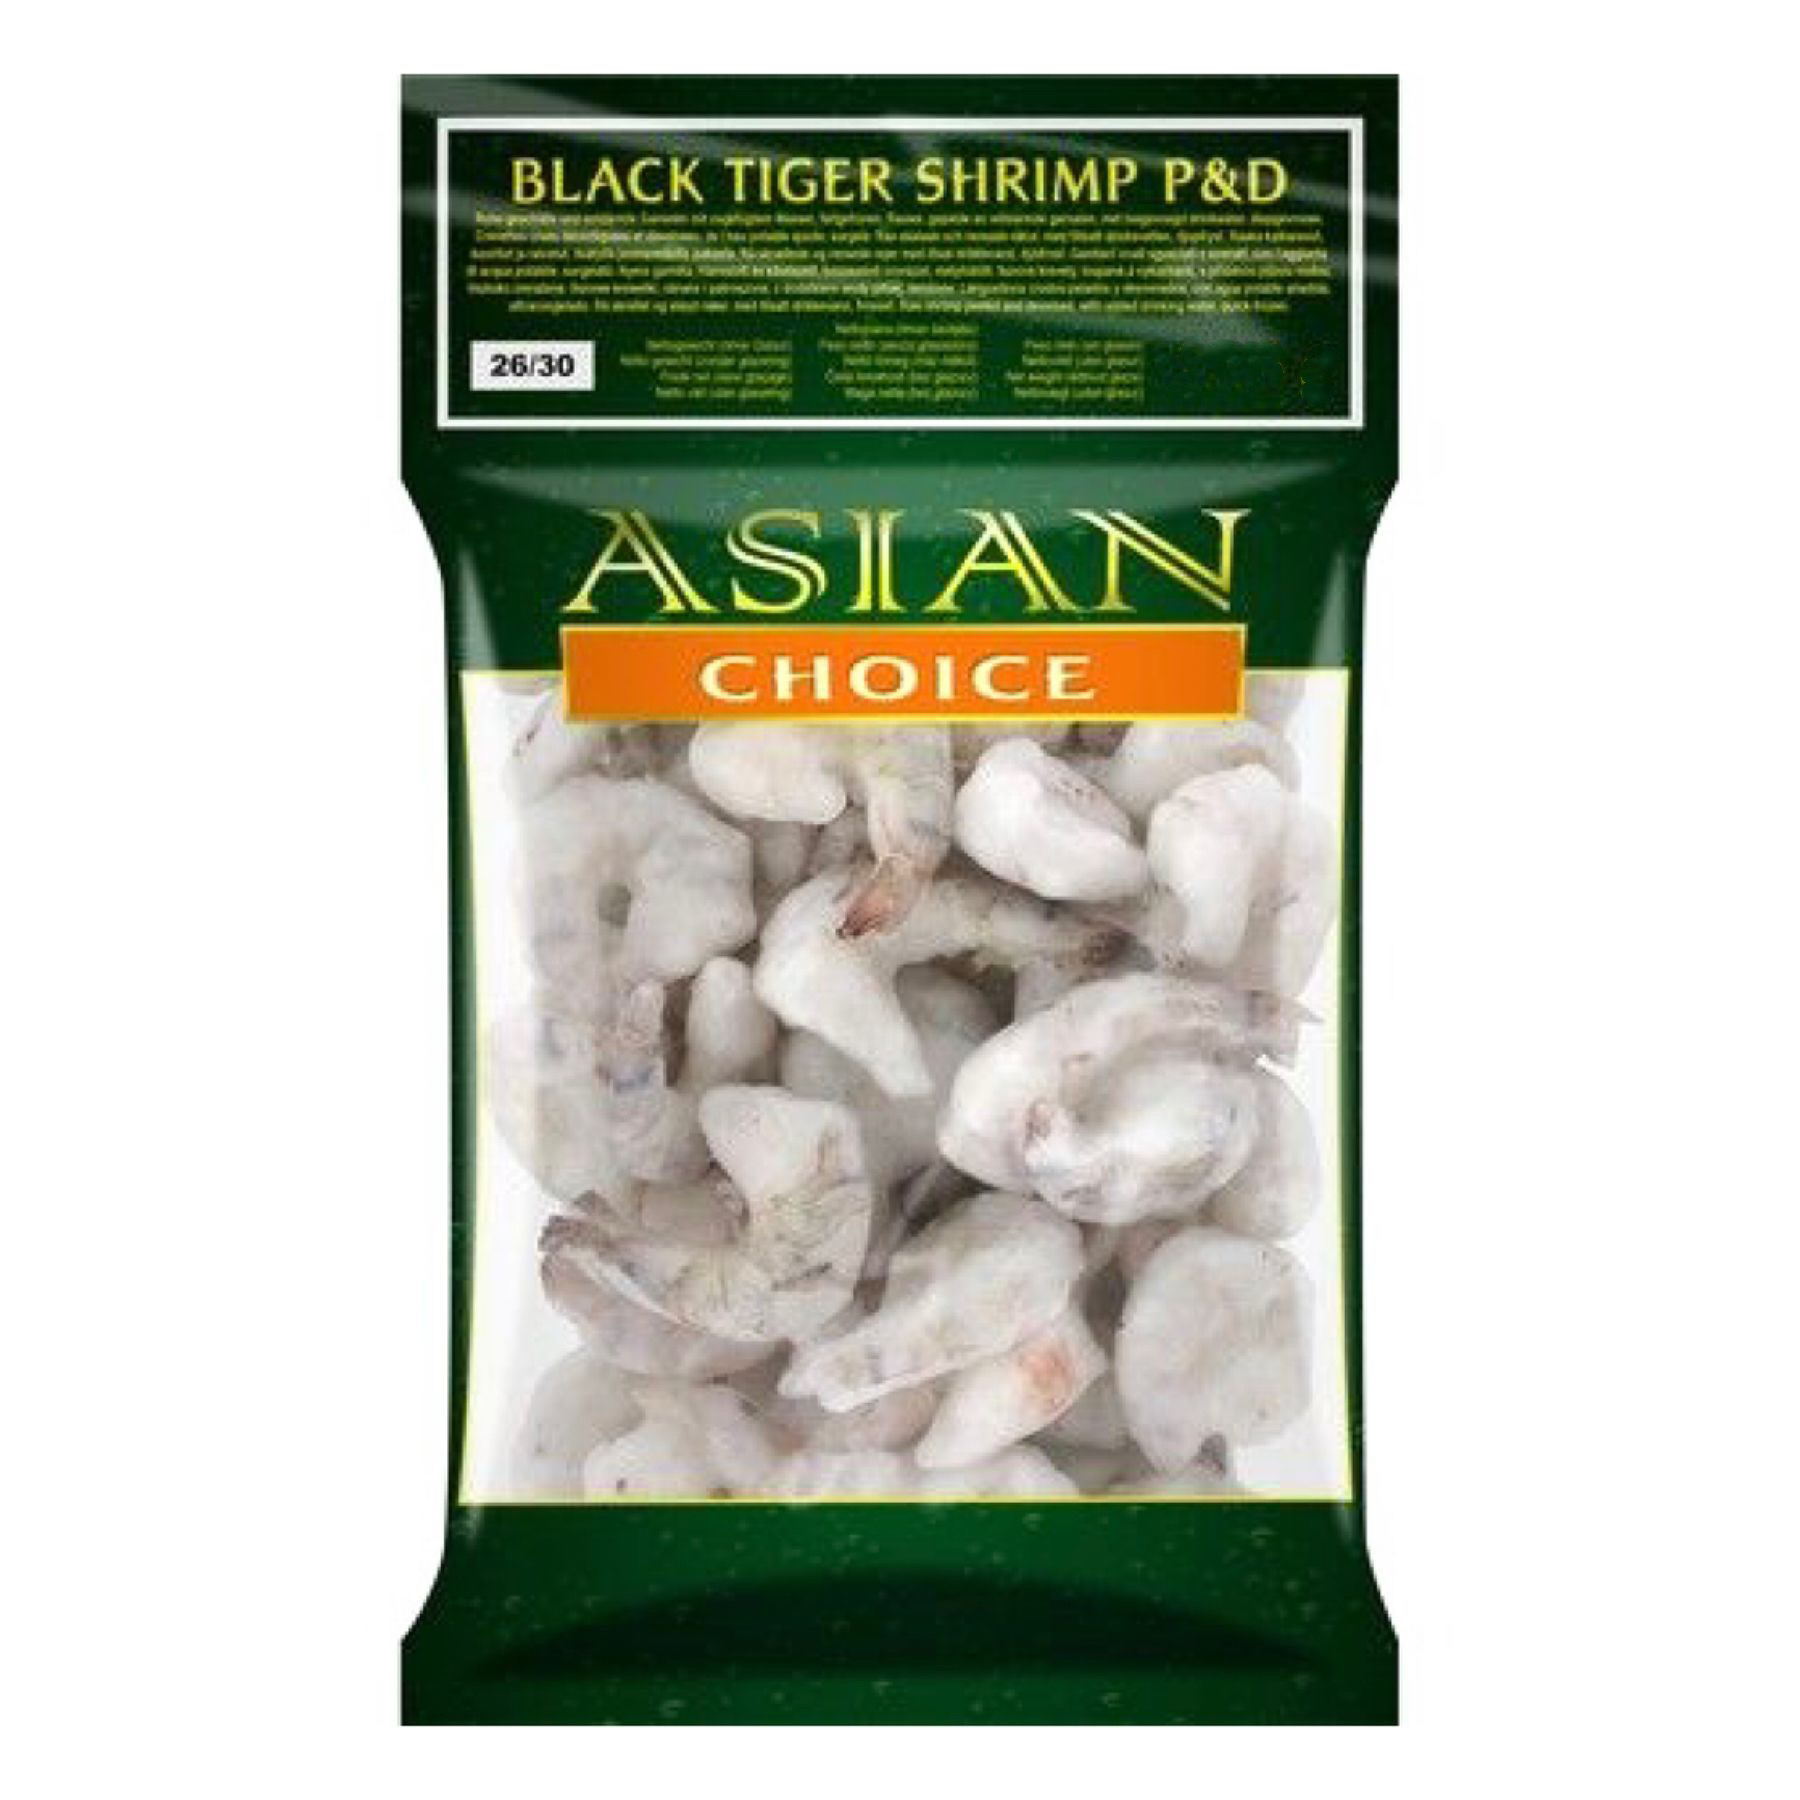 Asian Choice BT P&D Shrimp 26/30